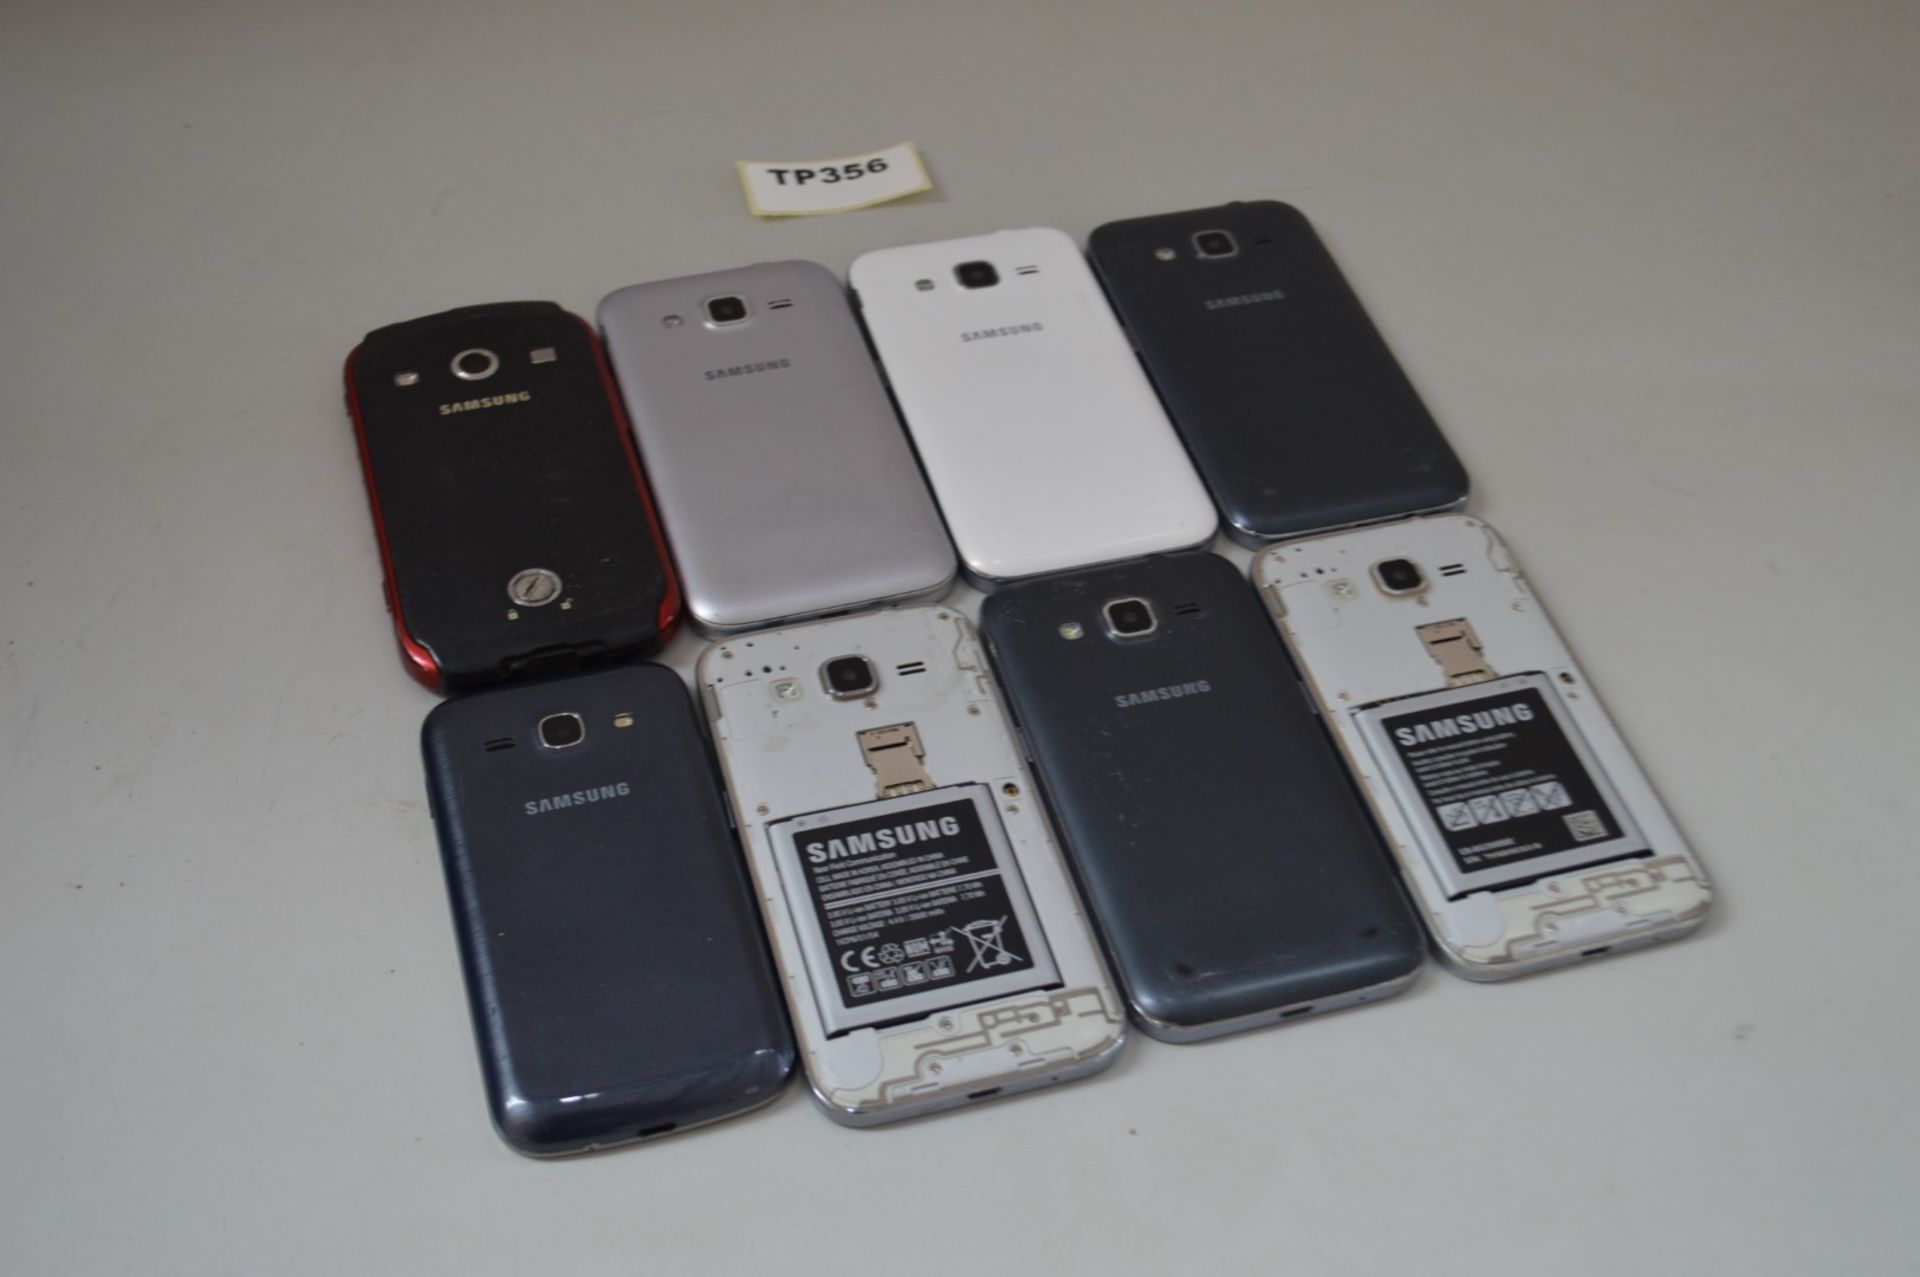 1 x Joblot Of 8 Samsung Smartphones - Ref TP356 - Image 3 of 3